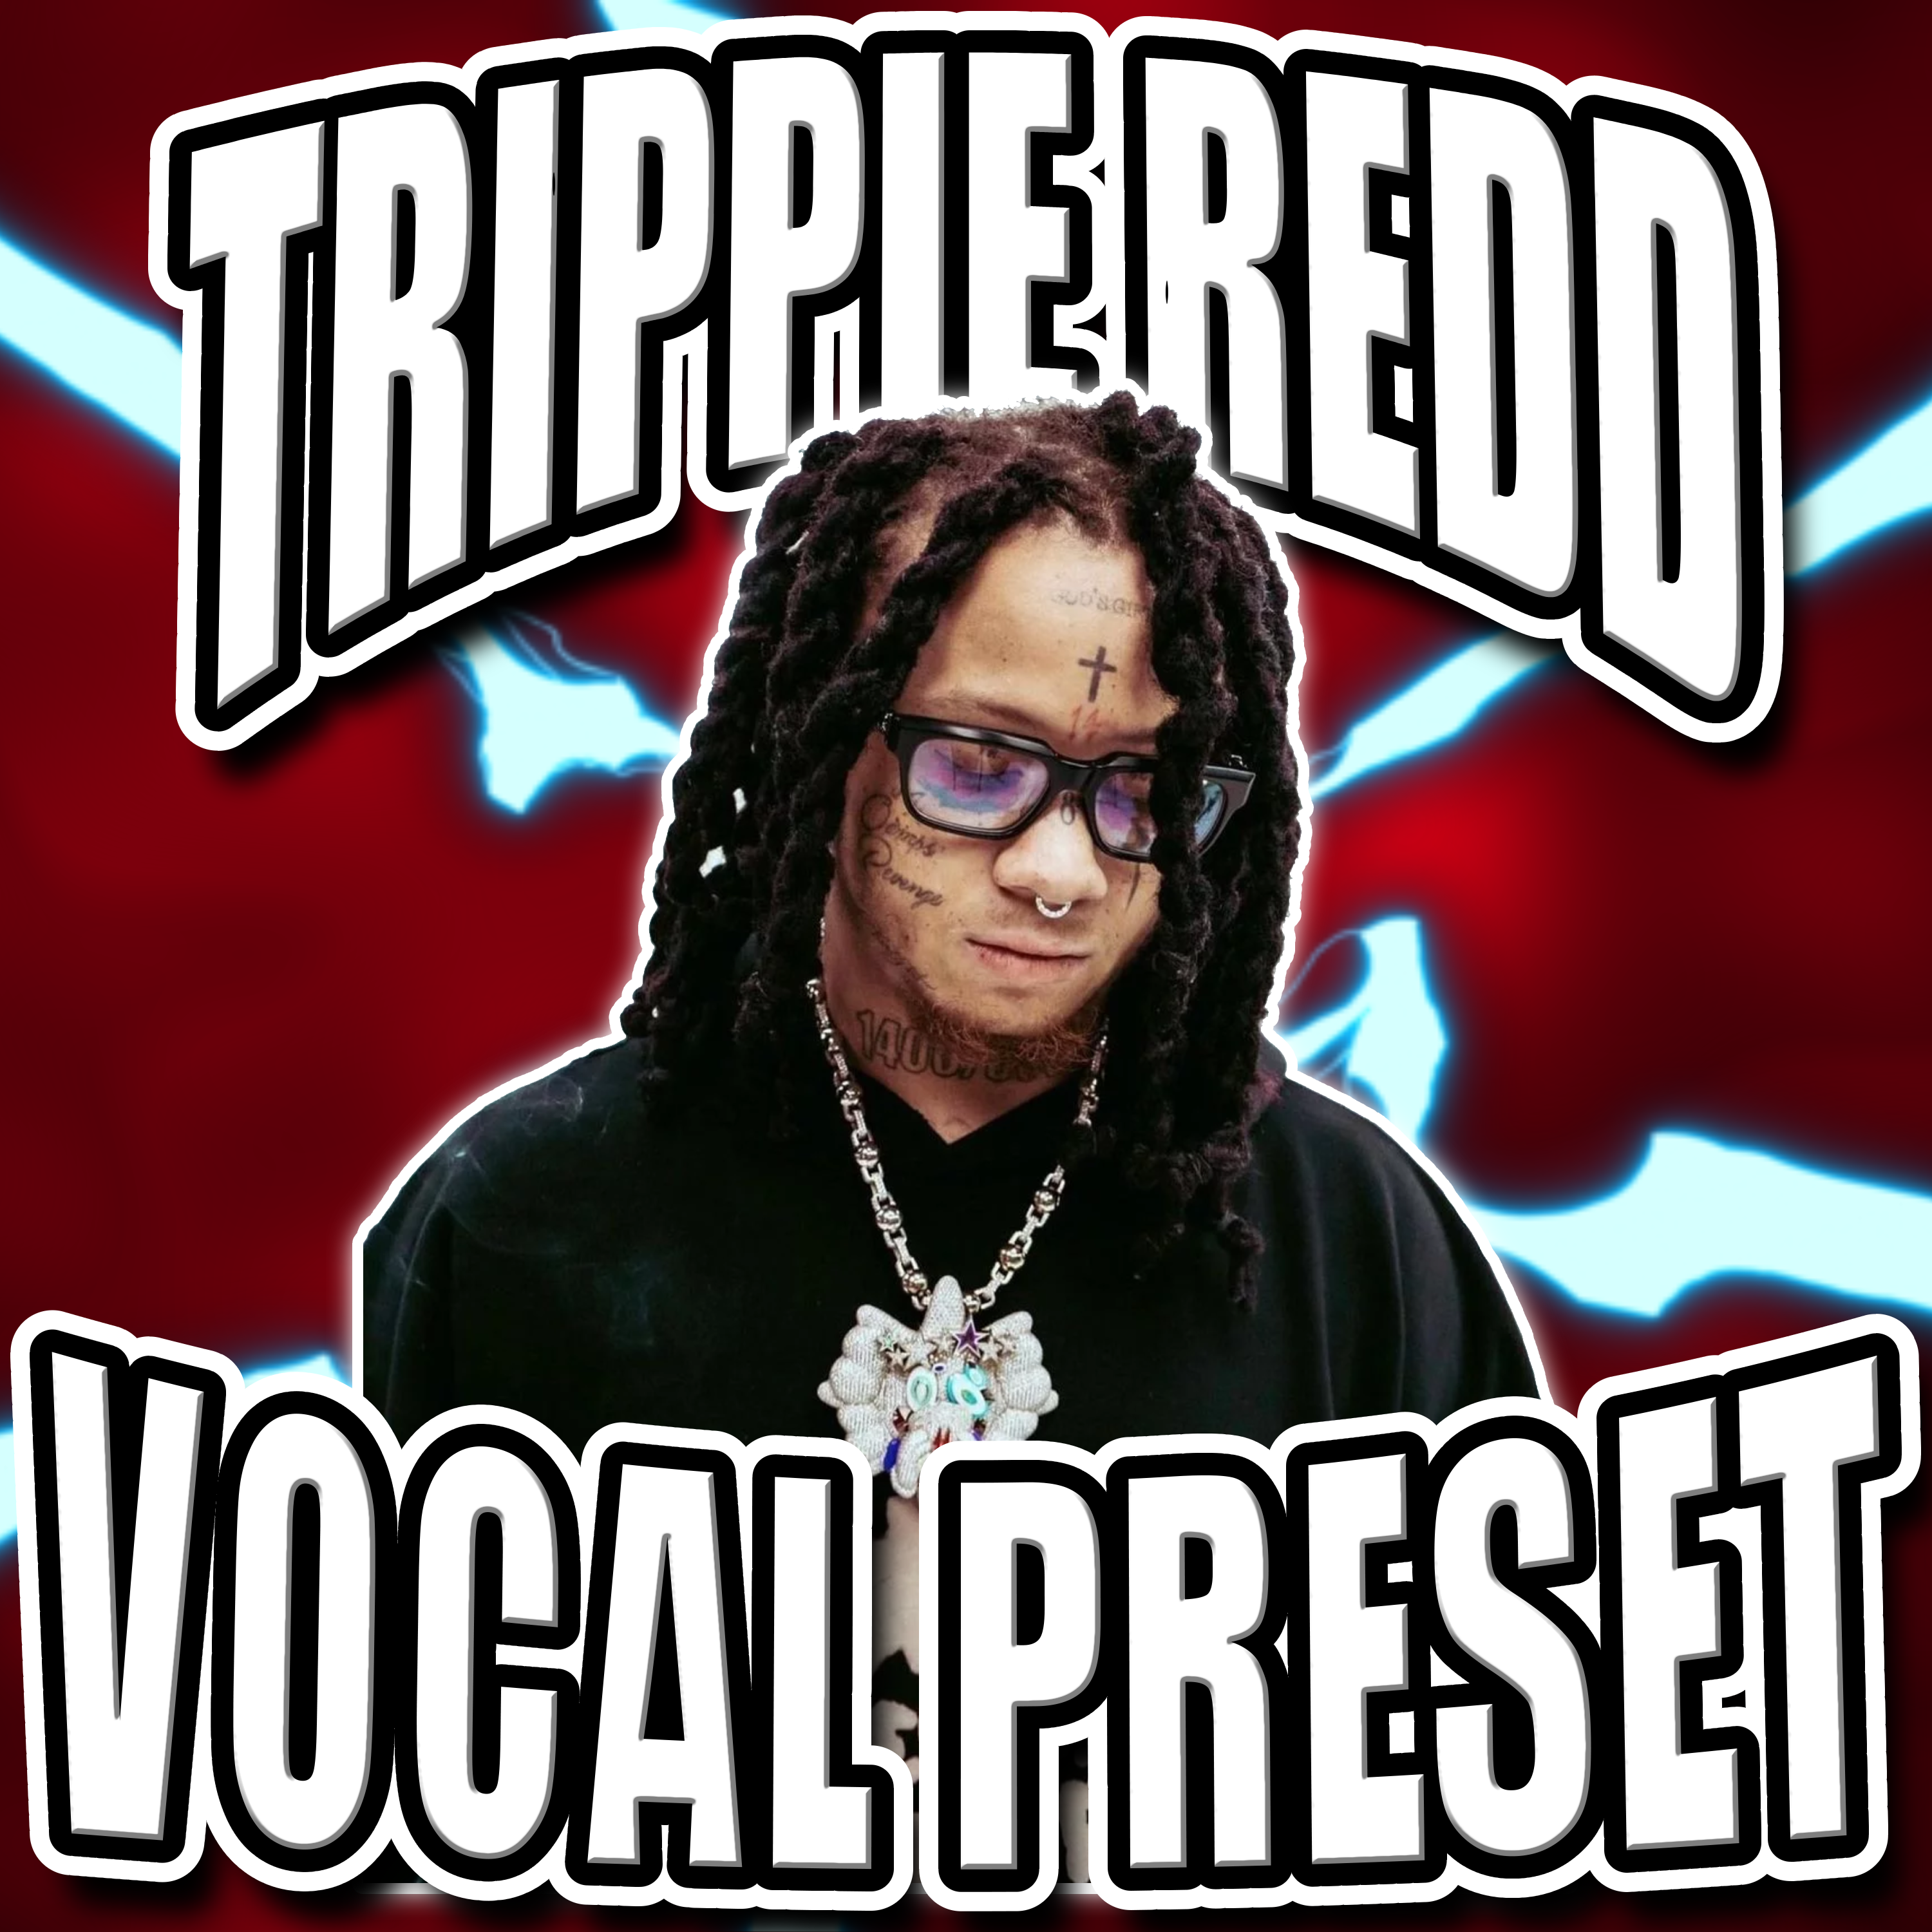 Trippie Redd Vocal Preset